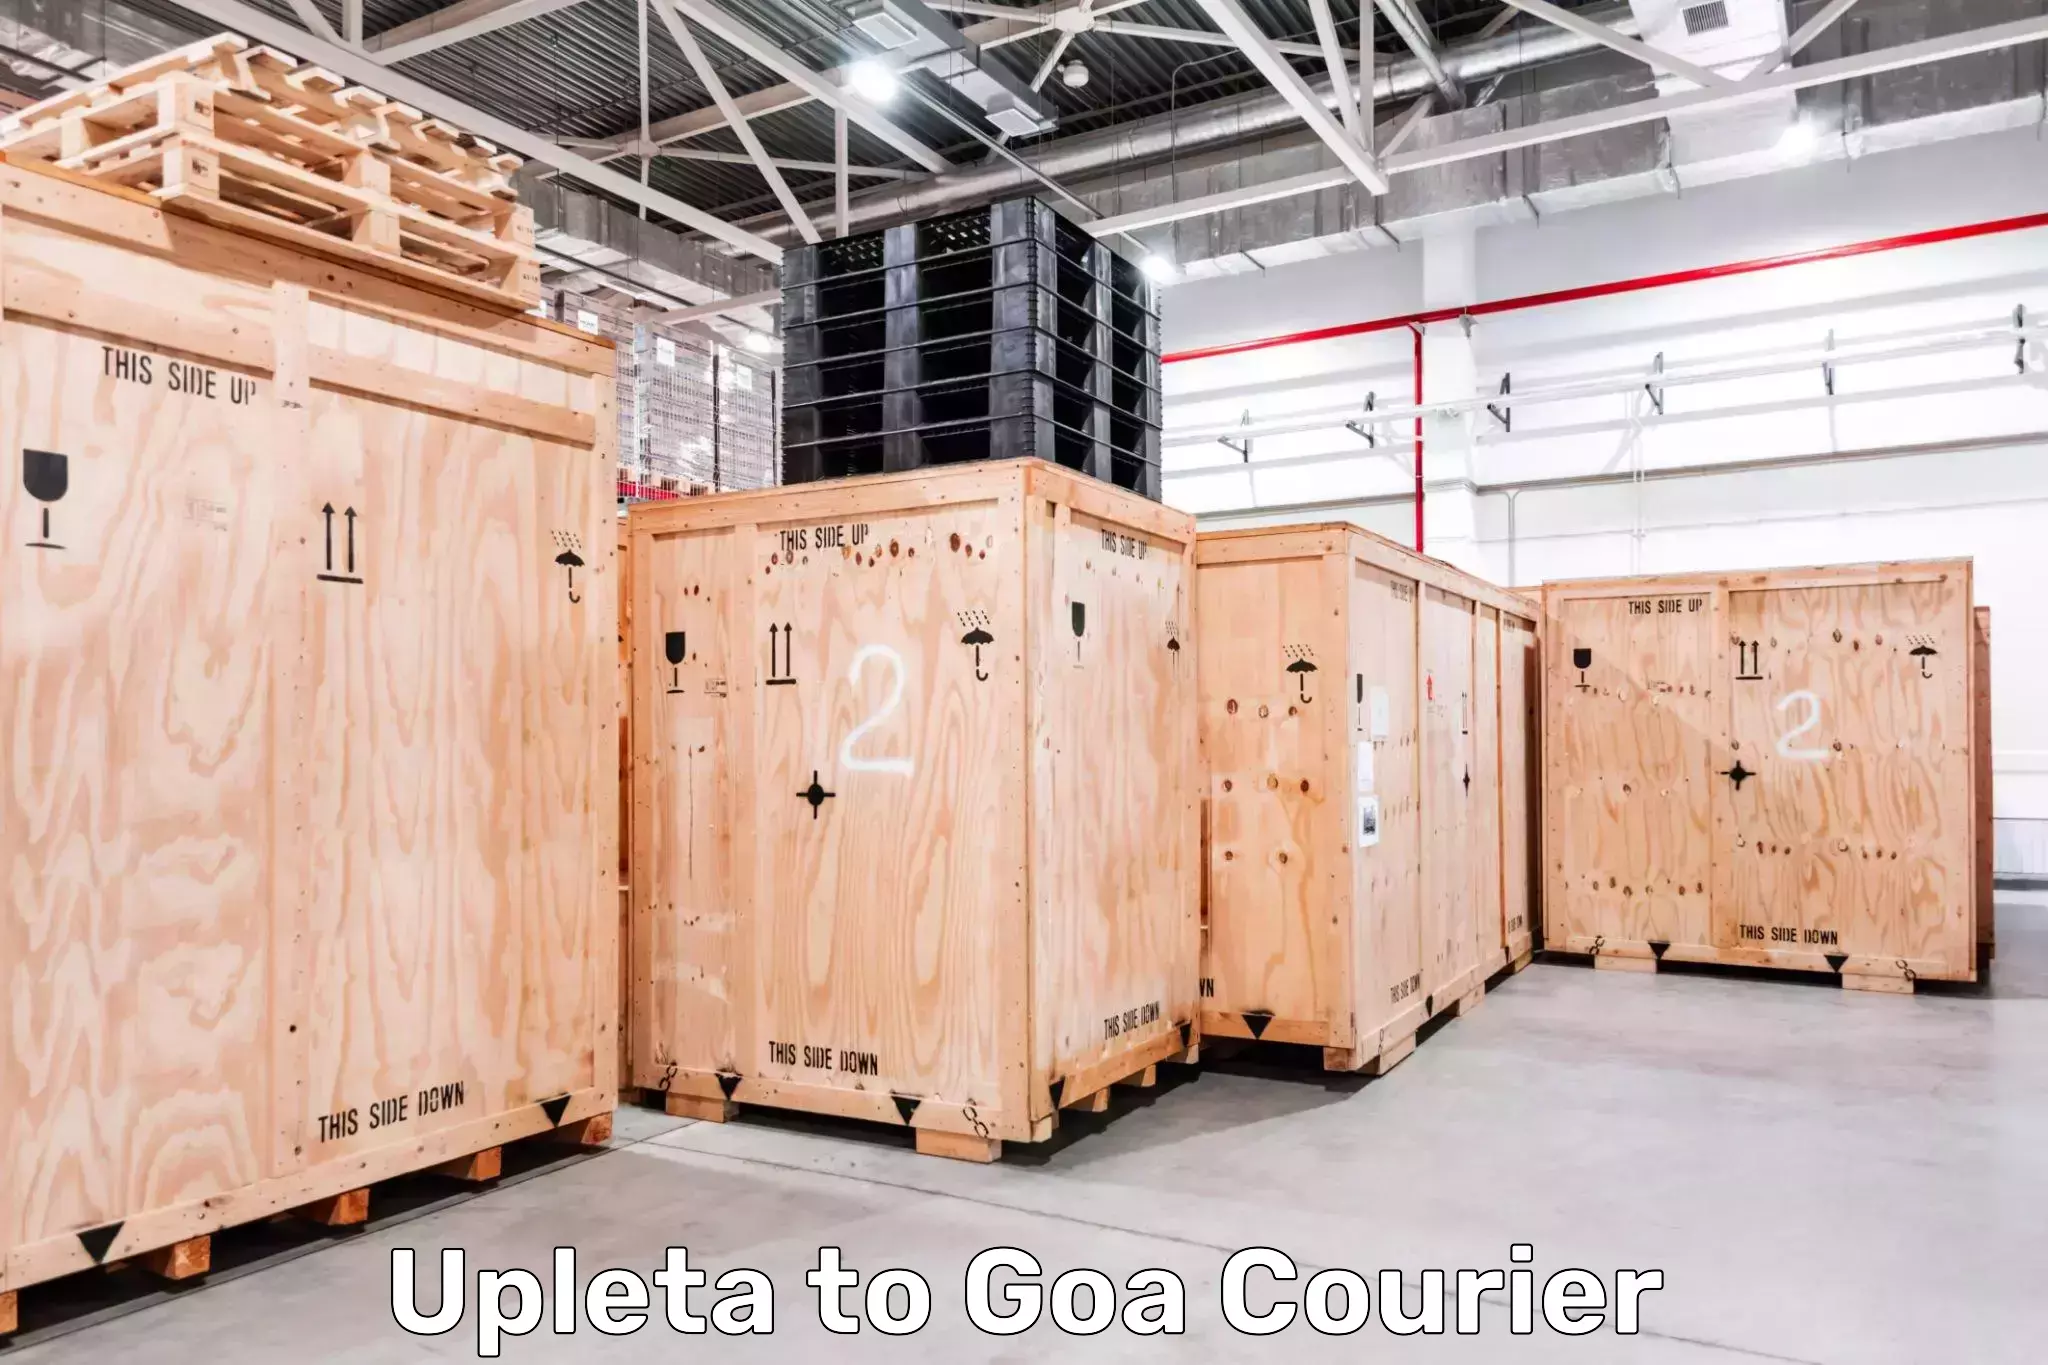 24-hour courier service Upleta to Ponda